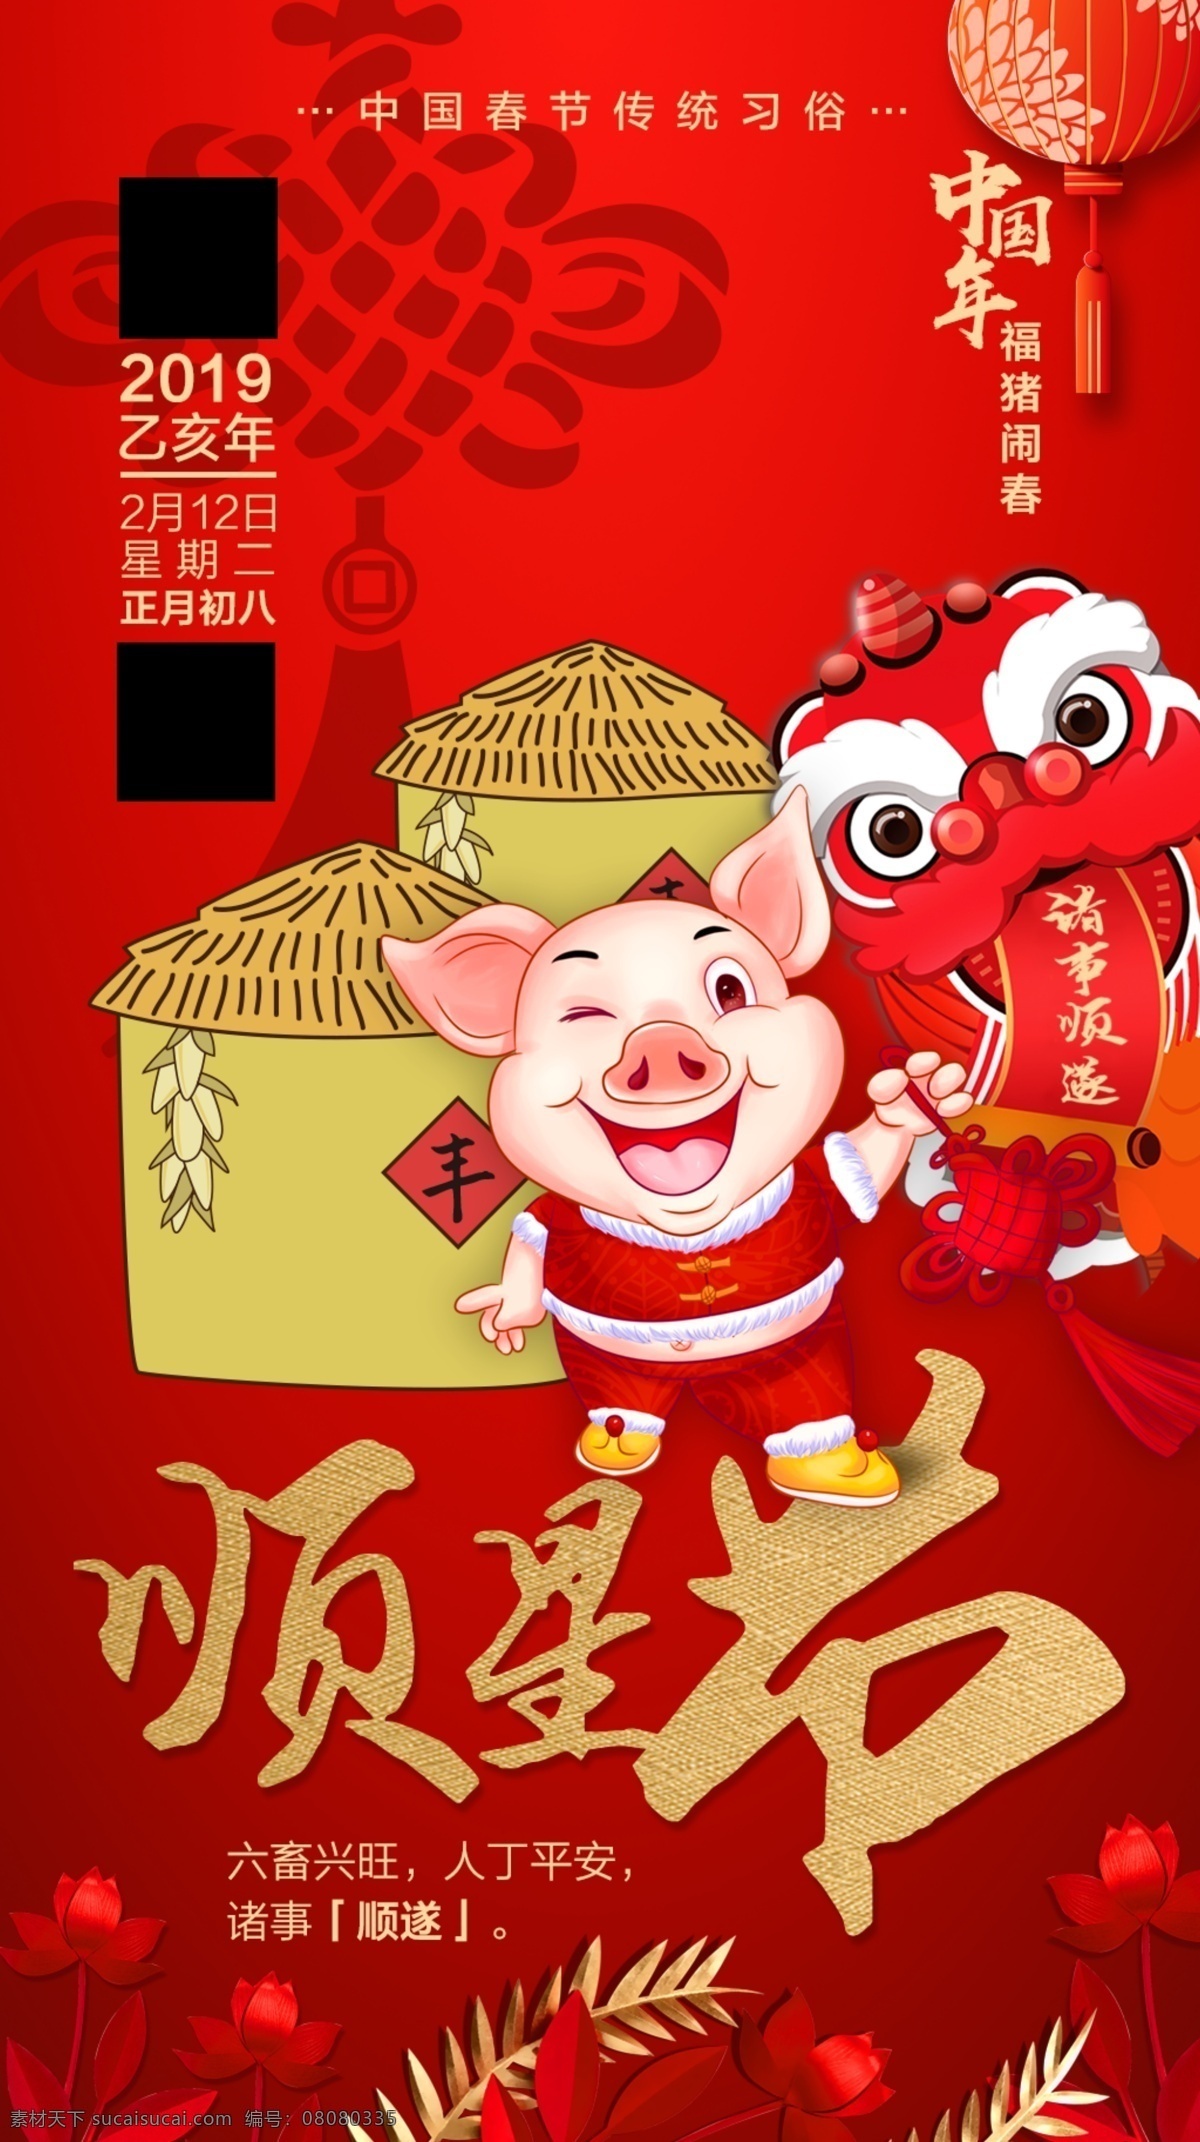 猪年 正月初八 顺星节 丰收 2019 舞狮 灯笼 中国结 红色 分层